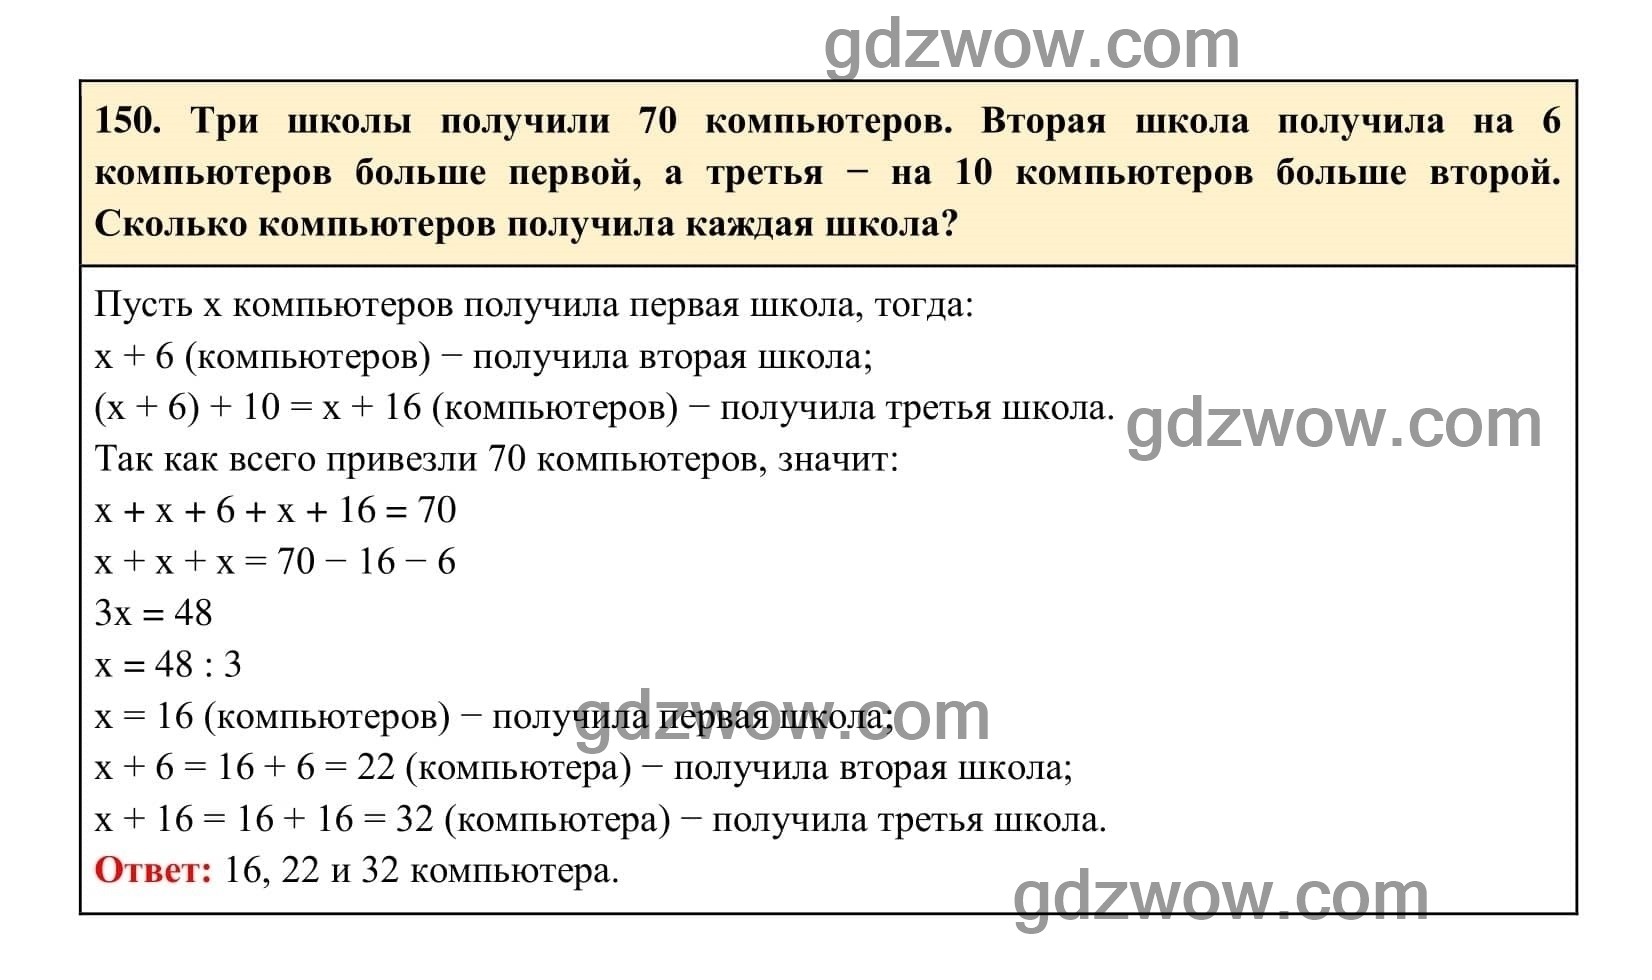 Упражнение 150 - ГДЗ по Алгебре 7 класс Учебник Макарычев (решебник) - GDZwow